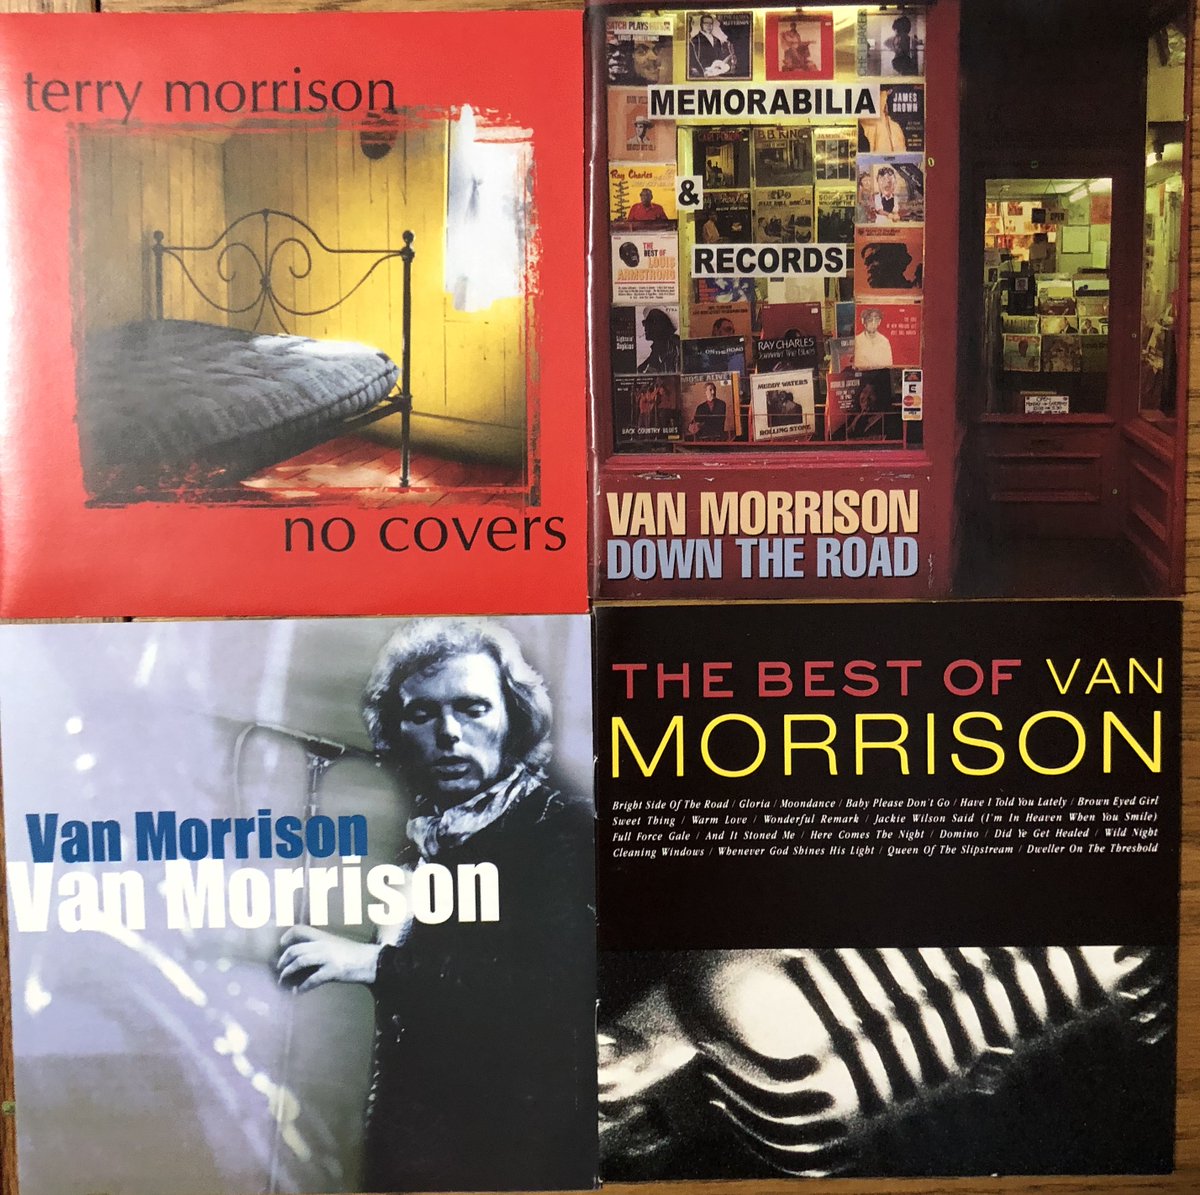 Day 673 #CDsOnTheShelf Terry Morrison is a beloved #YEG singer-songwriter. I wish Van wasn't such a jackass.